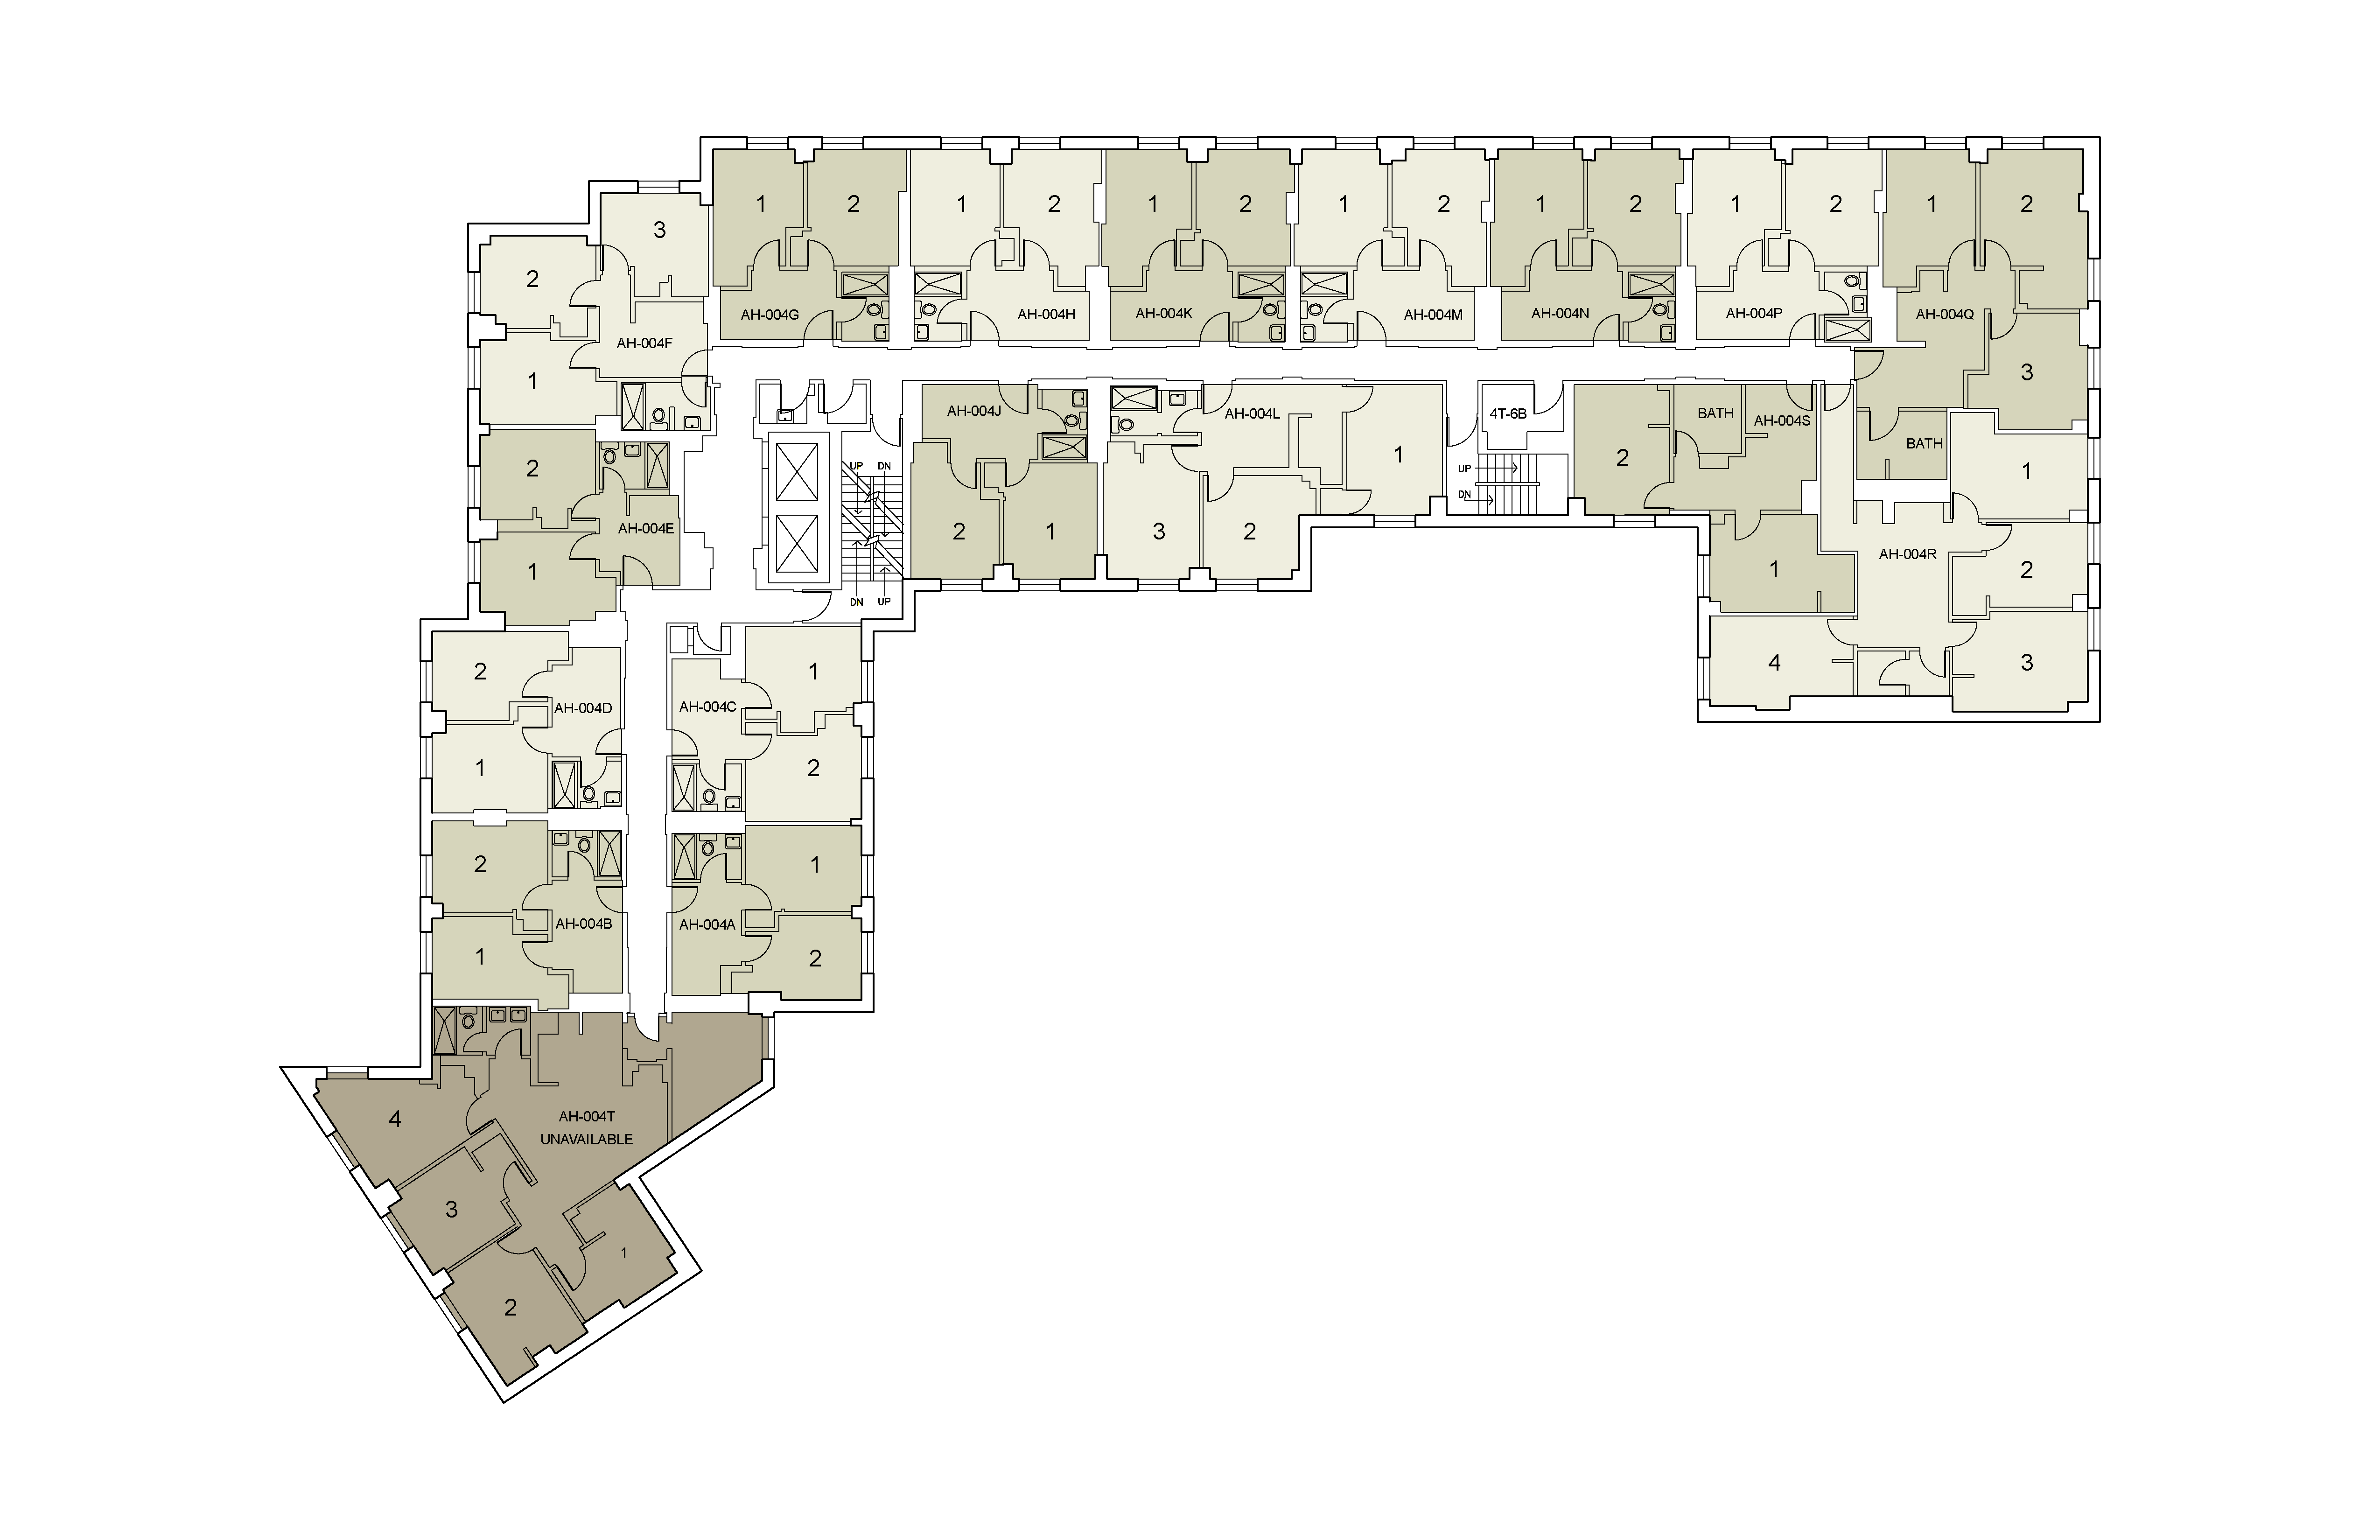 Floor plan for Alumni Floor 04